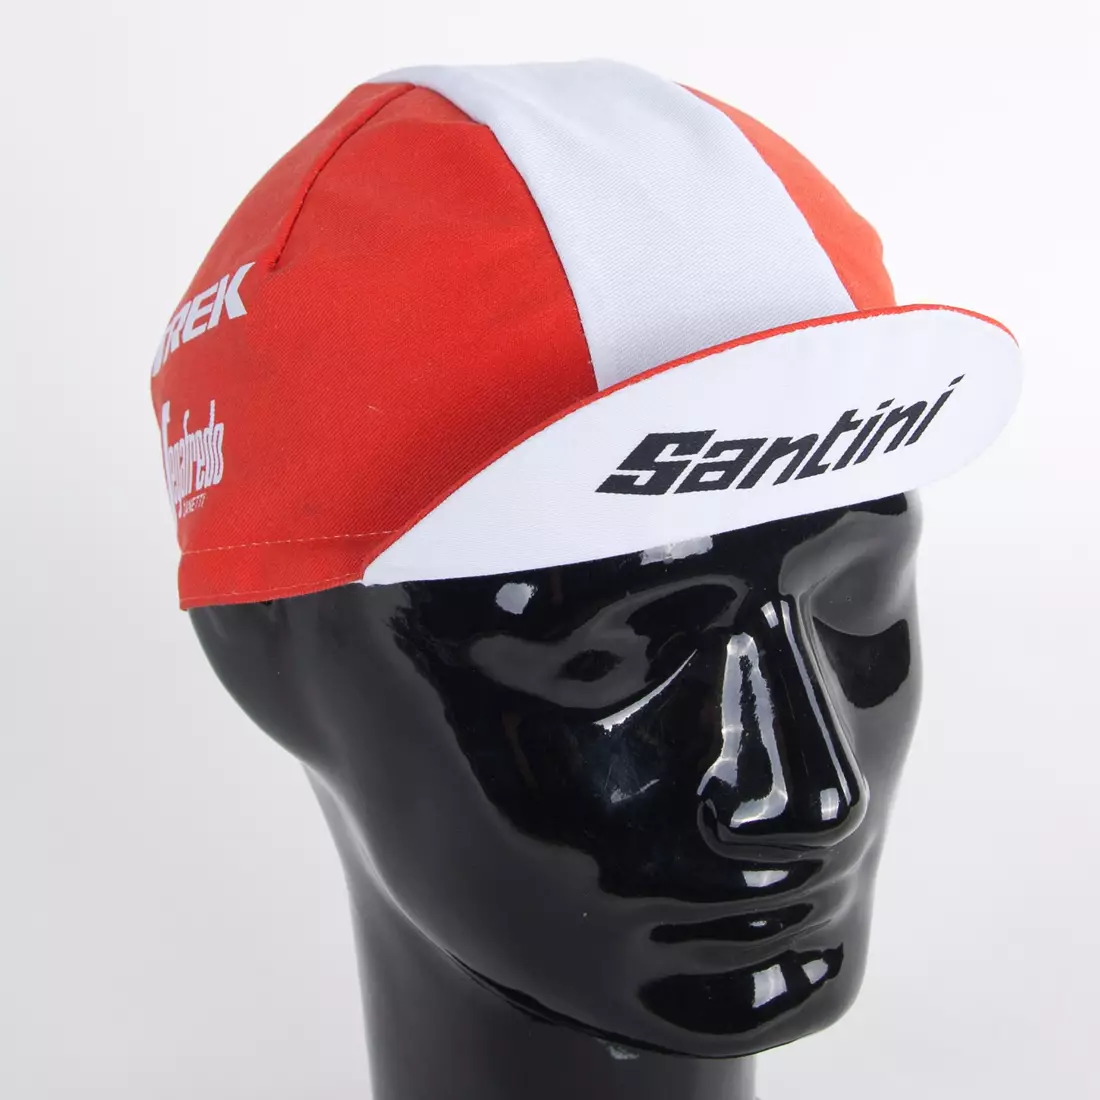 Apis Profi TREK Segafredo cycling cap zanetti red and white stripe